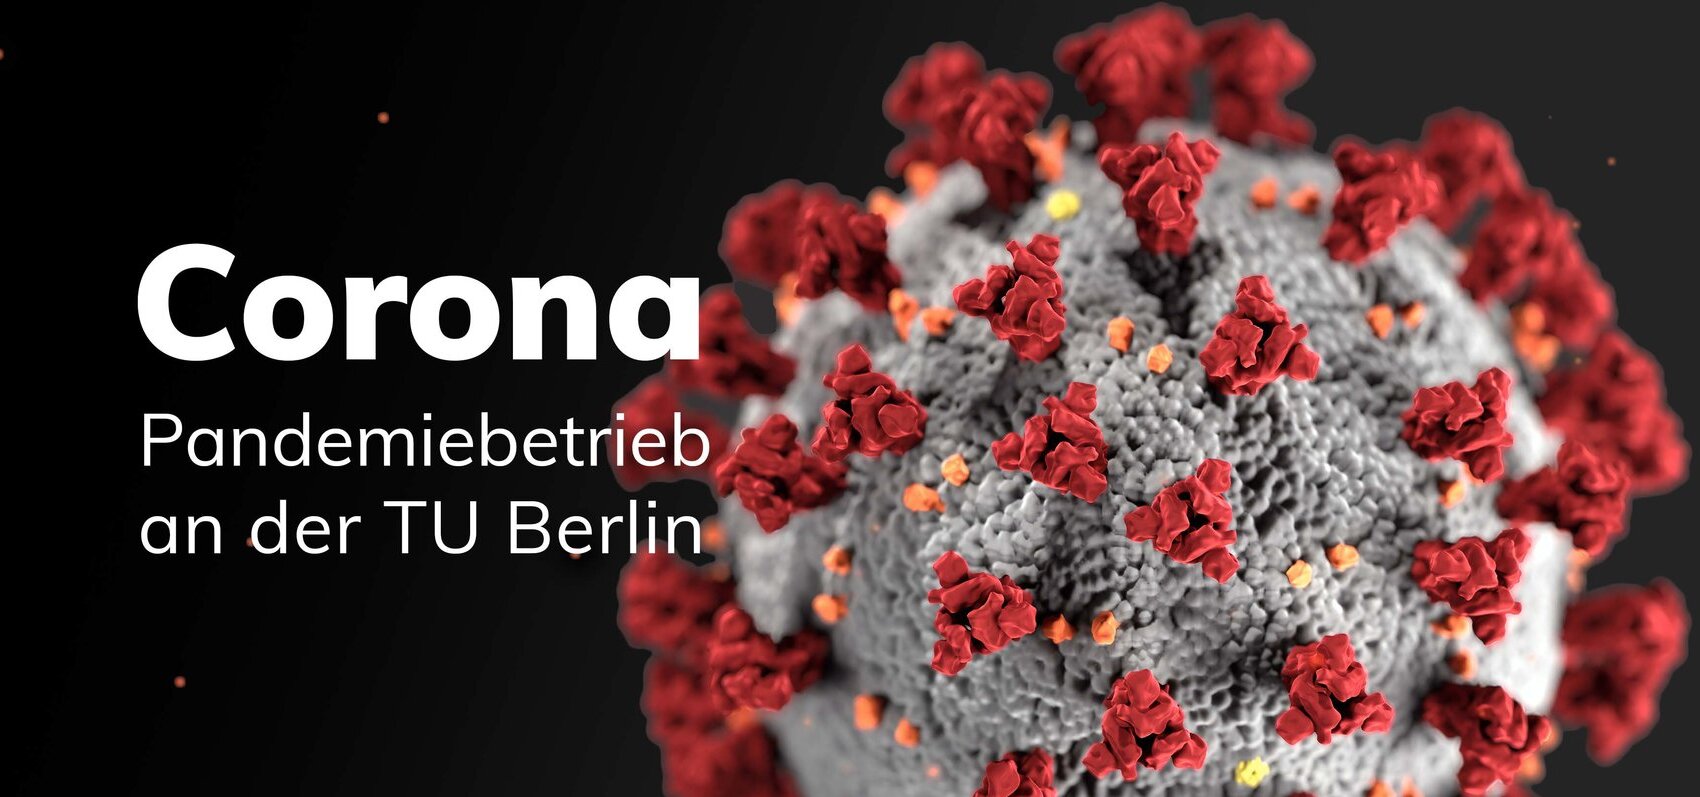 Coronavirus TU Berlin informiert Beschäftigte und Studierende